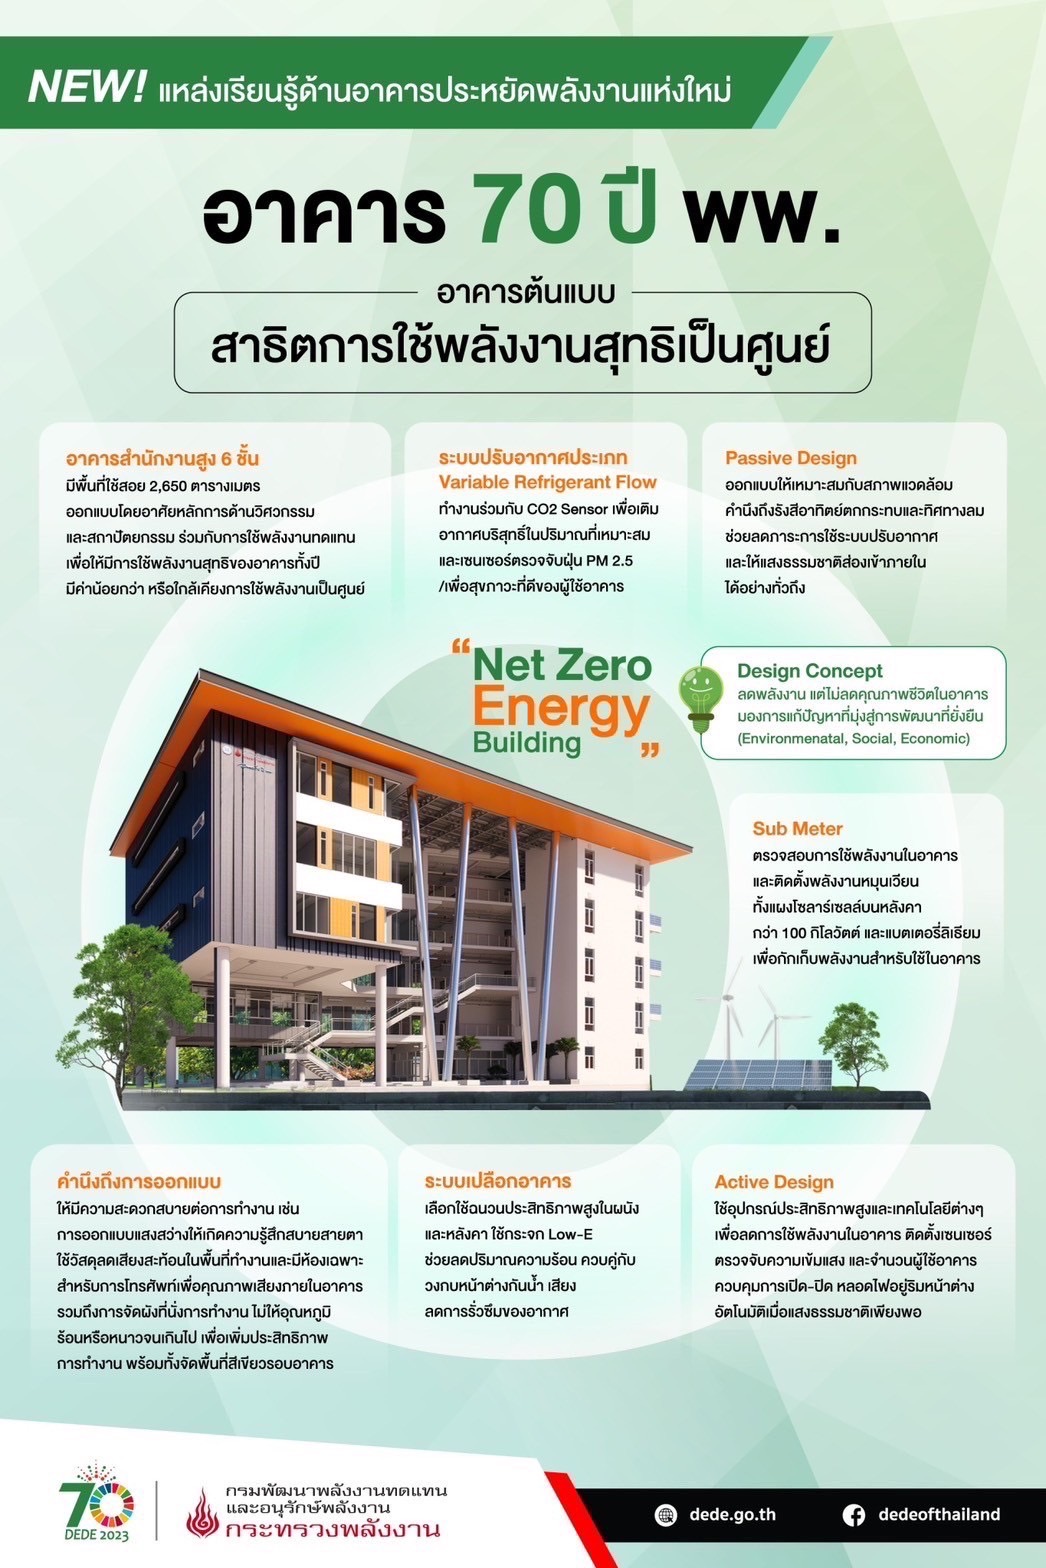 พีระพันธุ์ เปิดอาคารใหม่ net zero energy building ใหญ่สุดในไทย